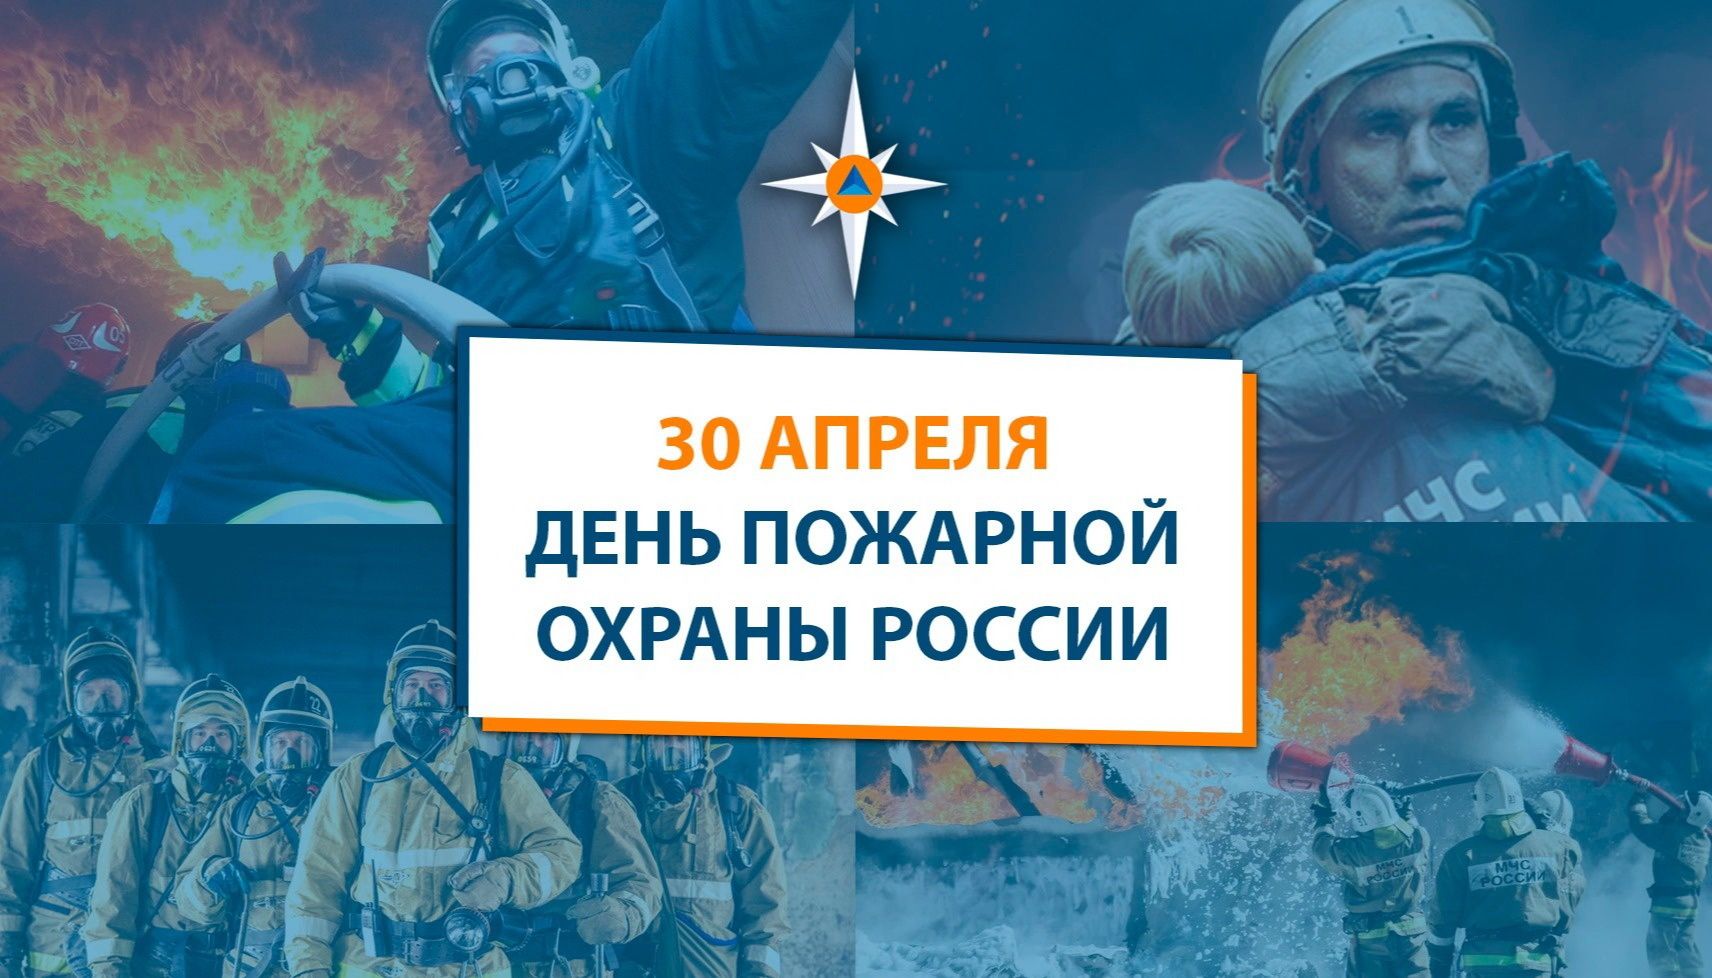 30 апреля - день пожарной охраны России